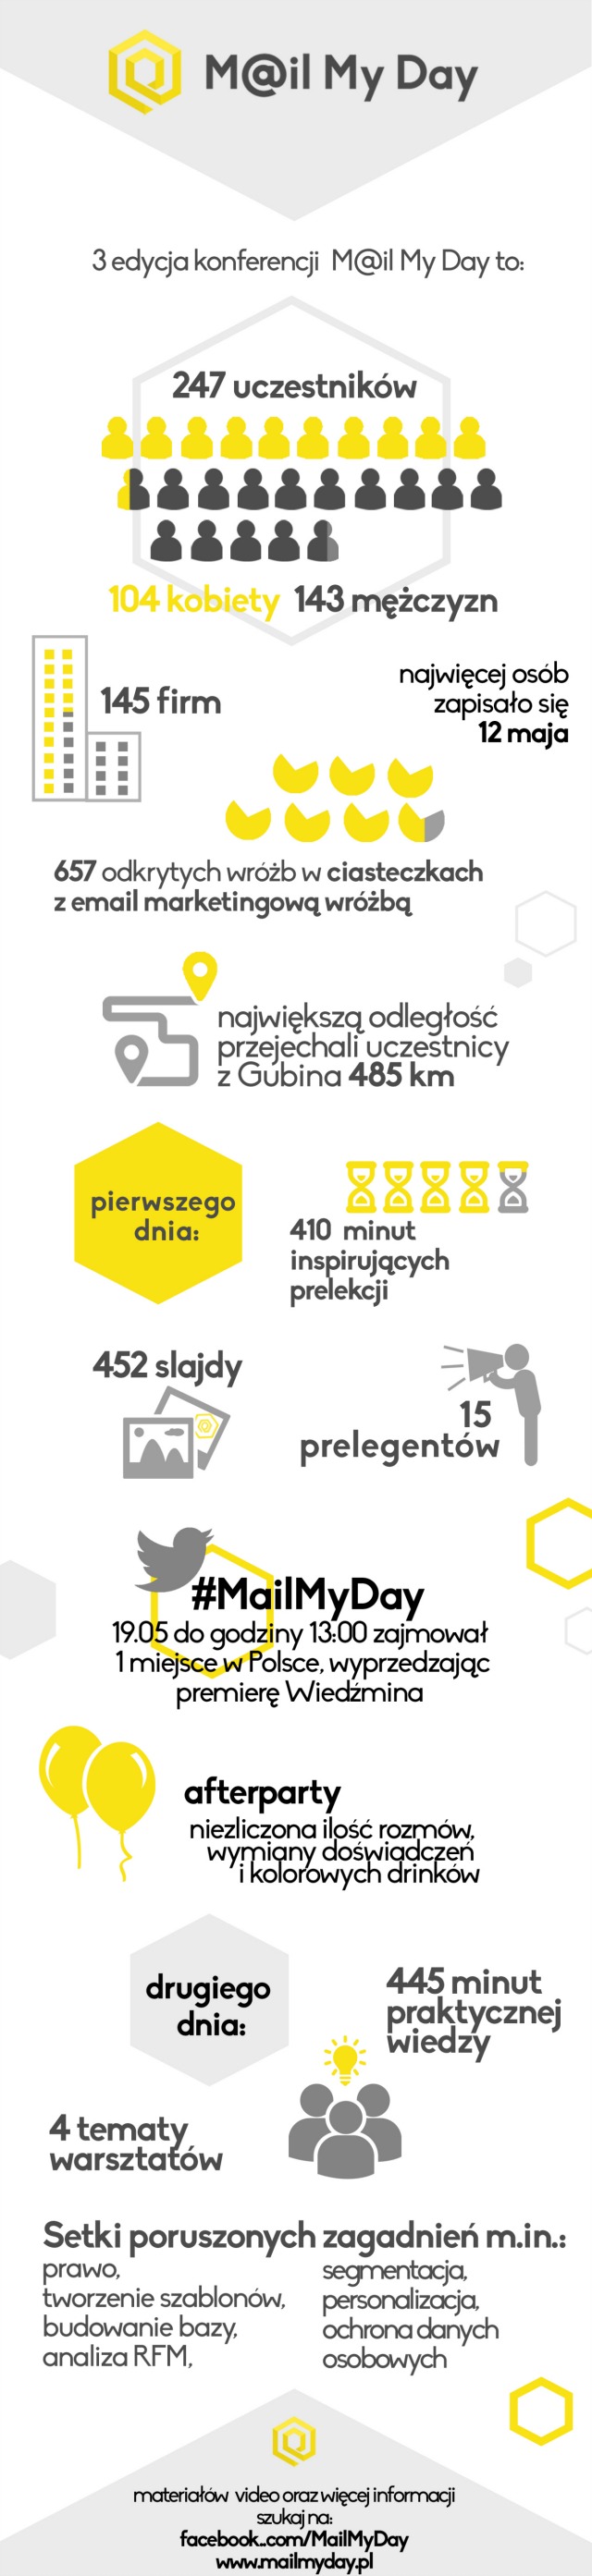 infografika_MMD